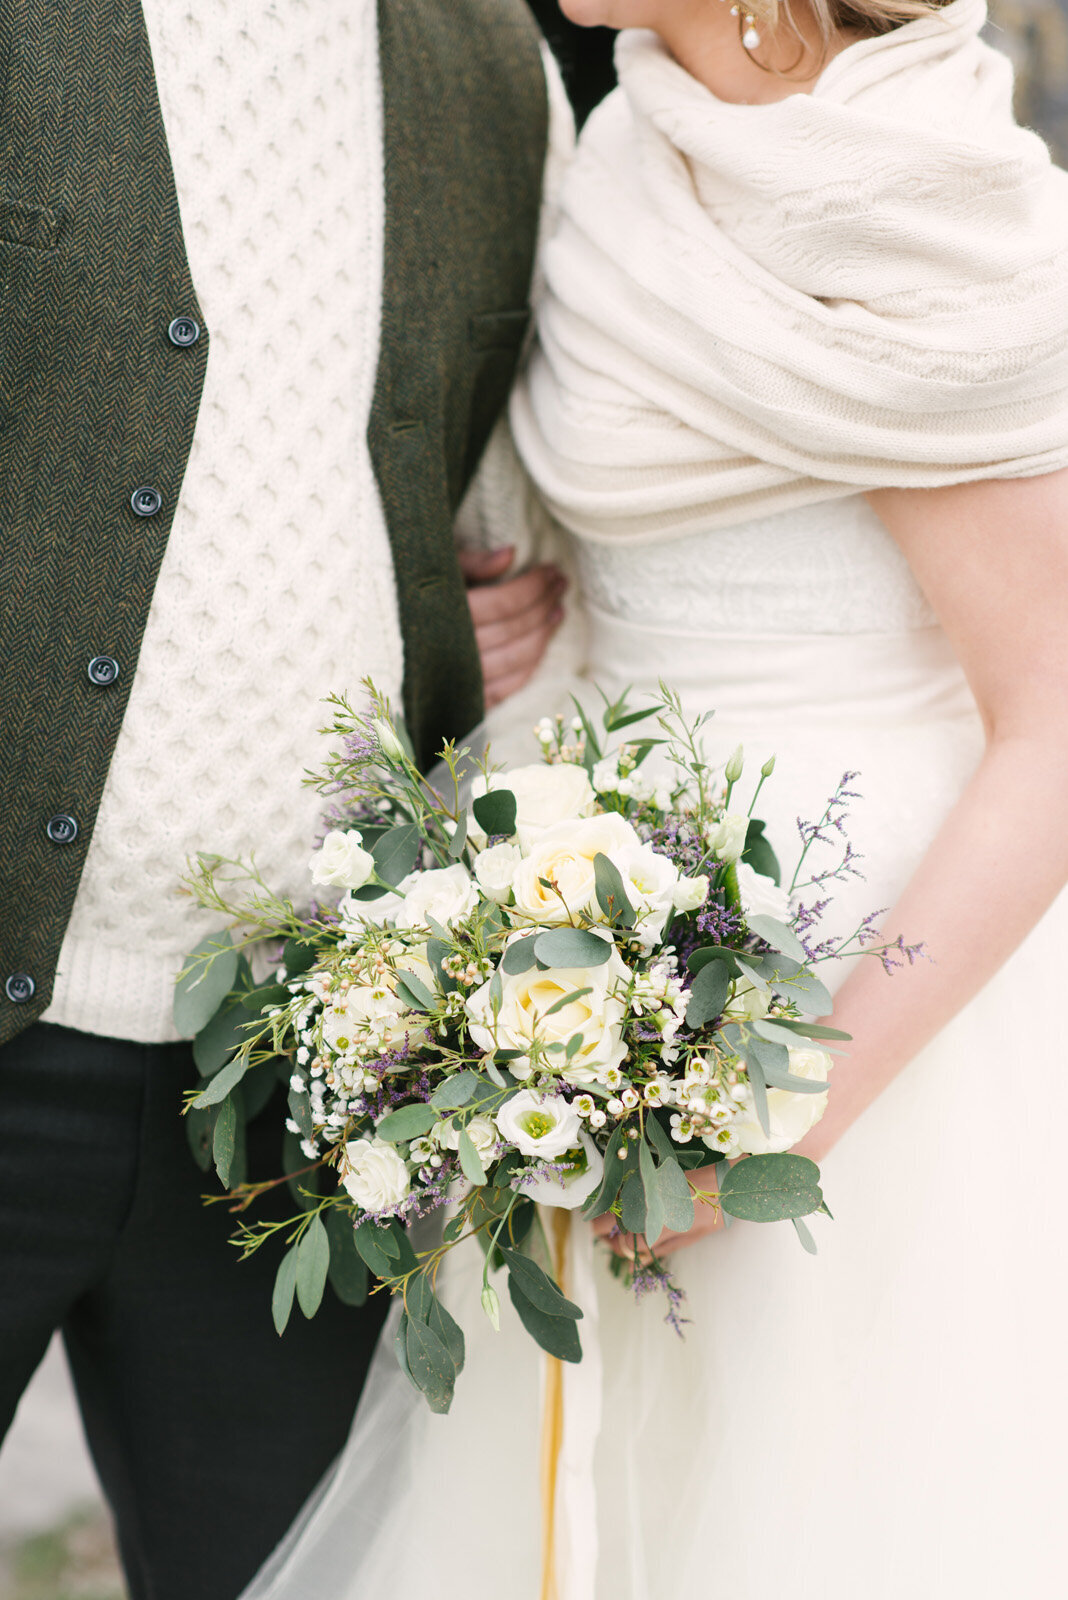 Kate-Murtaugh-Events-Ireland-international-destination-wedding-planner-Irish-elopement-couple-County-Clare-wildflower-bouquet